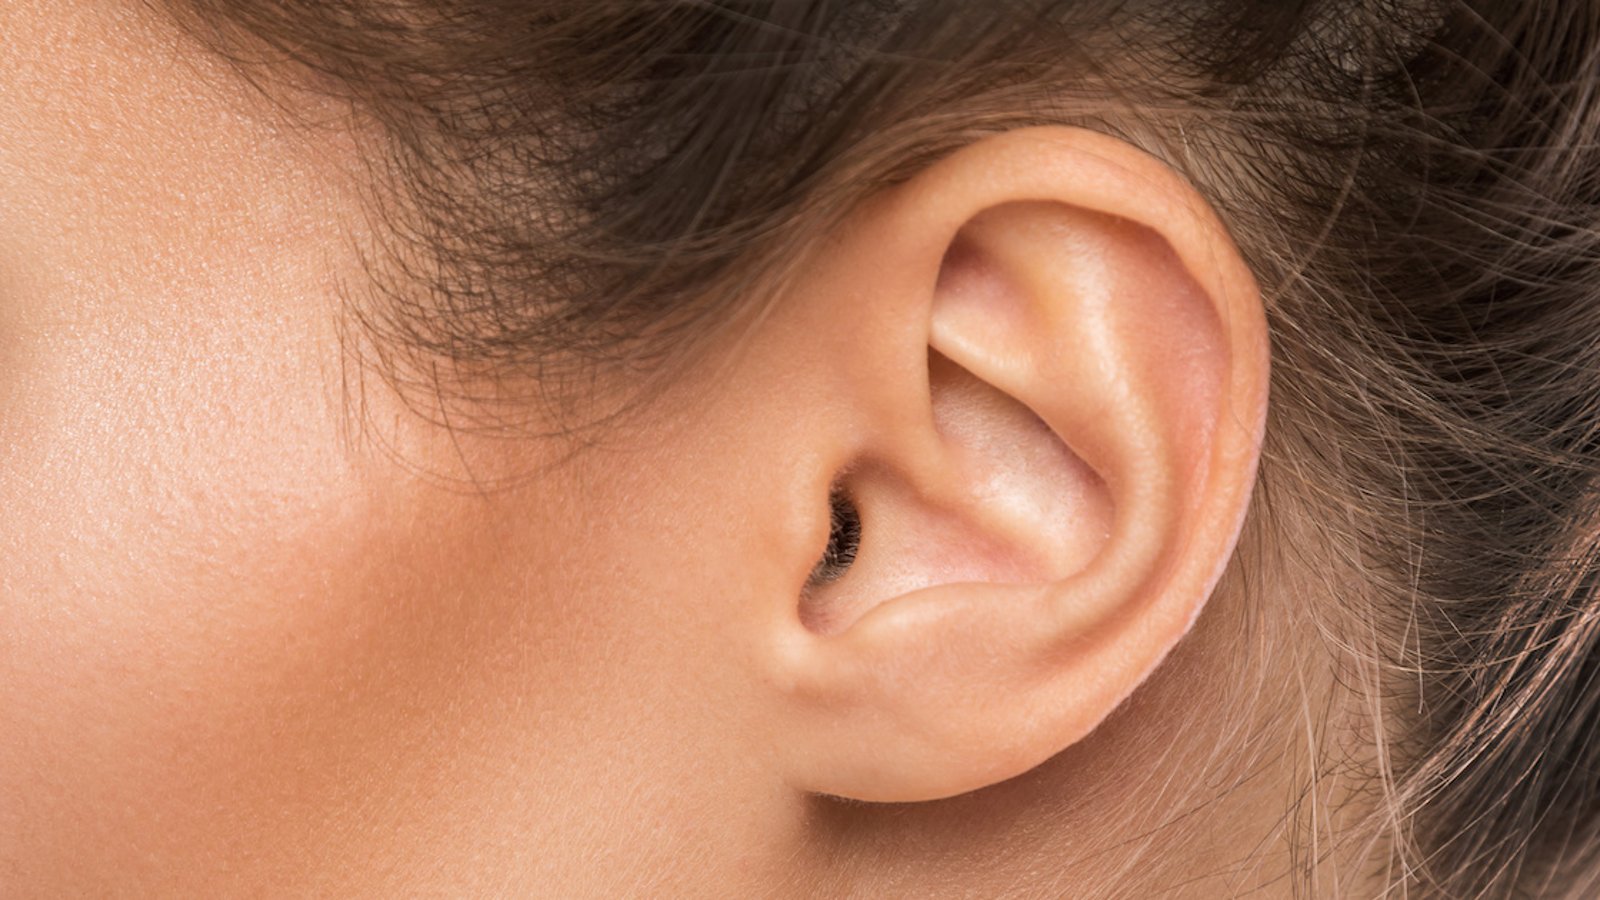 Comment bien se nettoyer les oreilles en toute sécurité